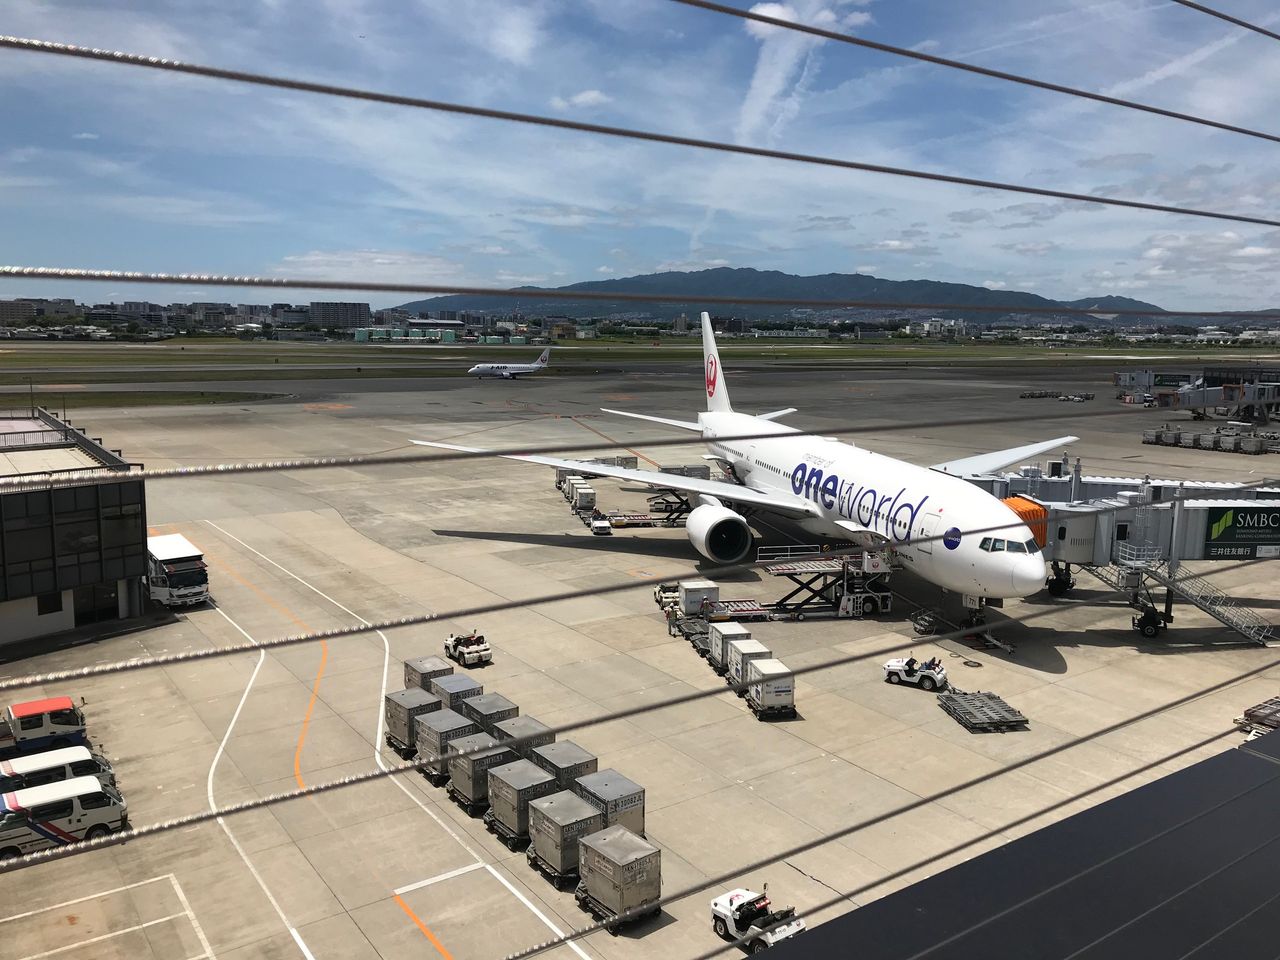 リニューアルした大阪国際空港 伊丹空港に降車レーンと送迎スペースができていた 宝塚暮らしをもっと楽しもう 情報誌comipa